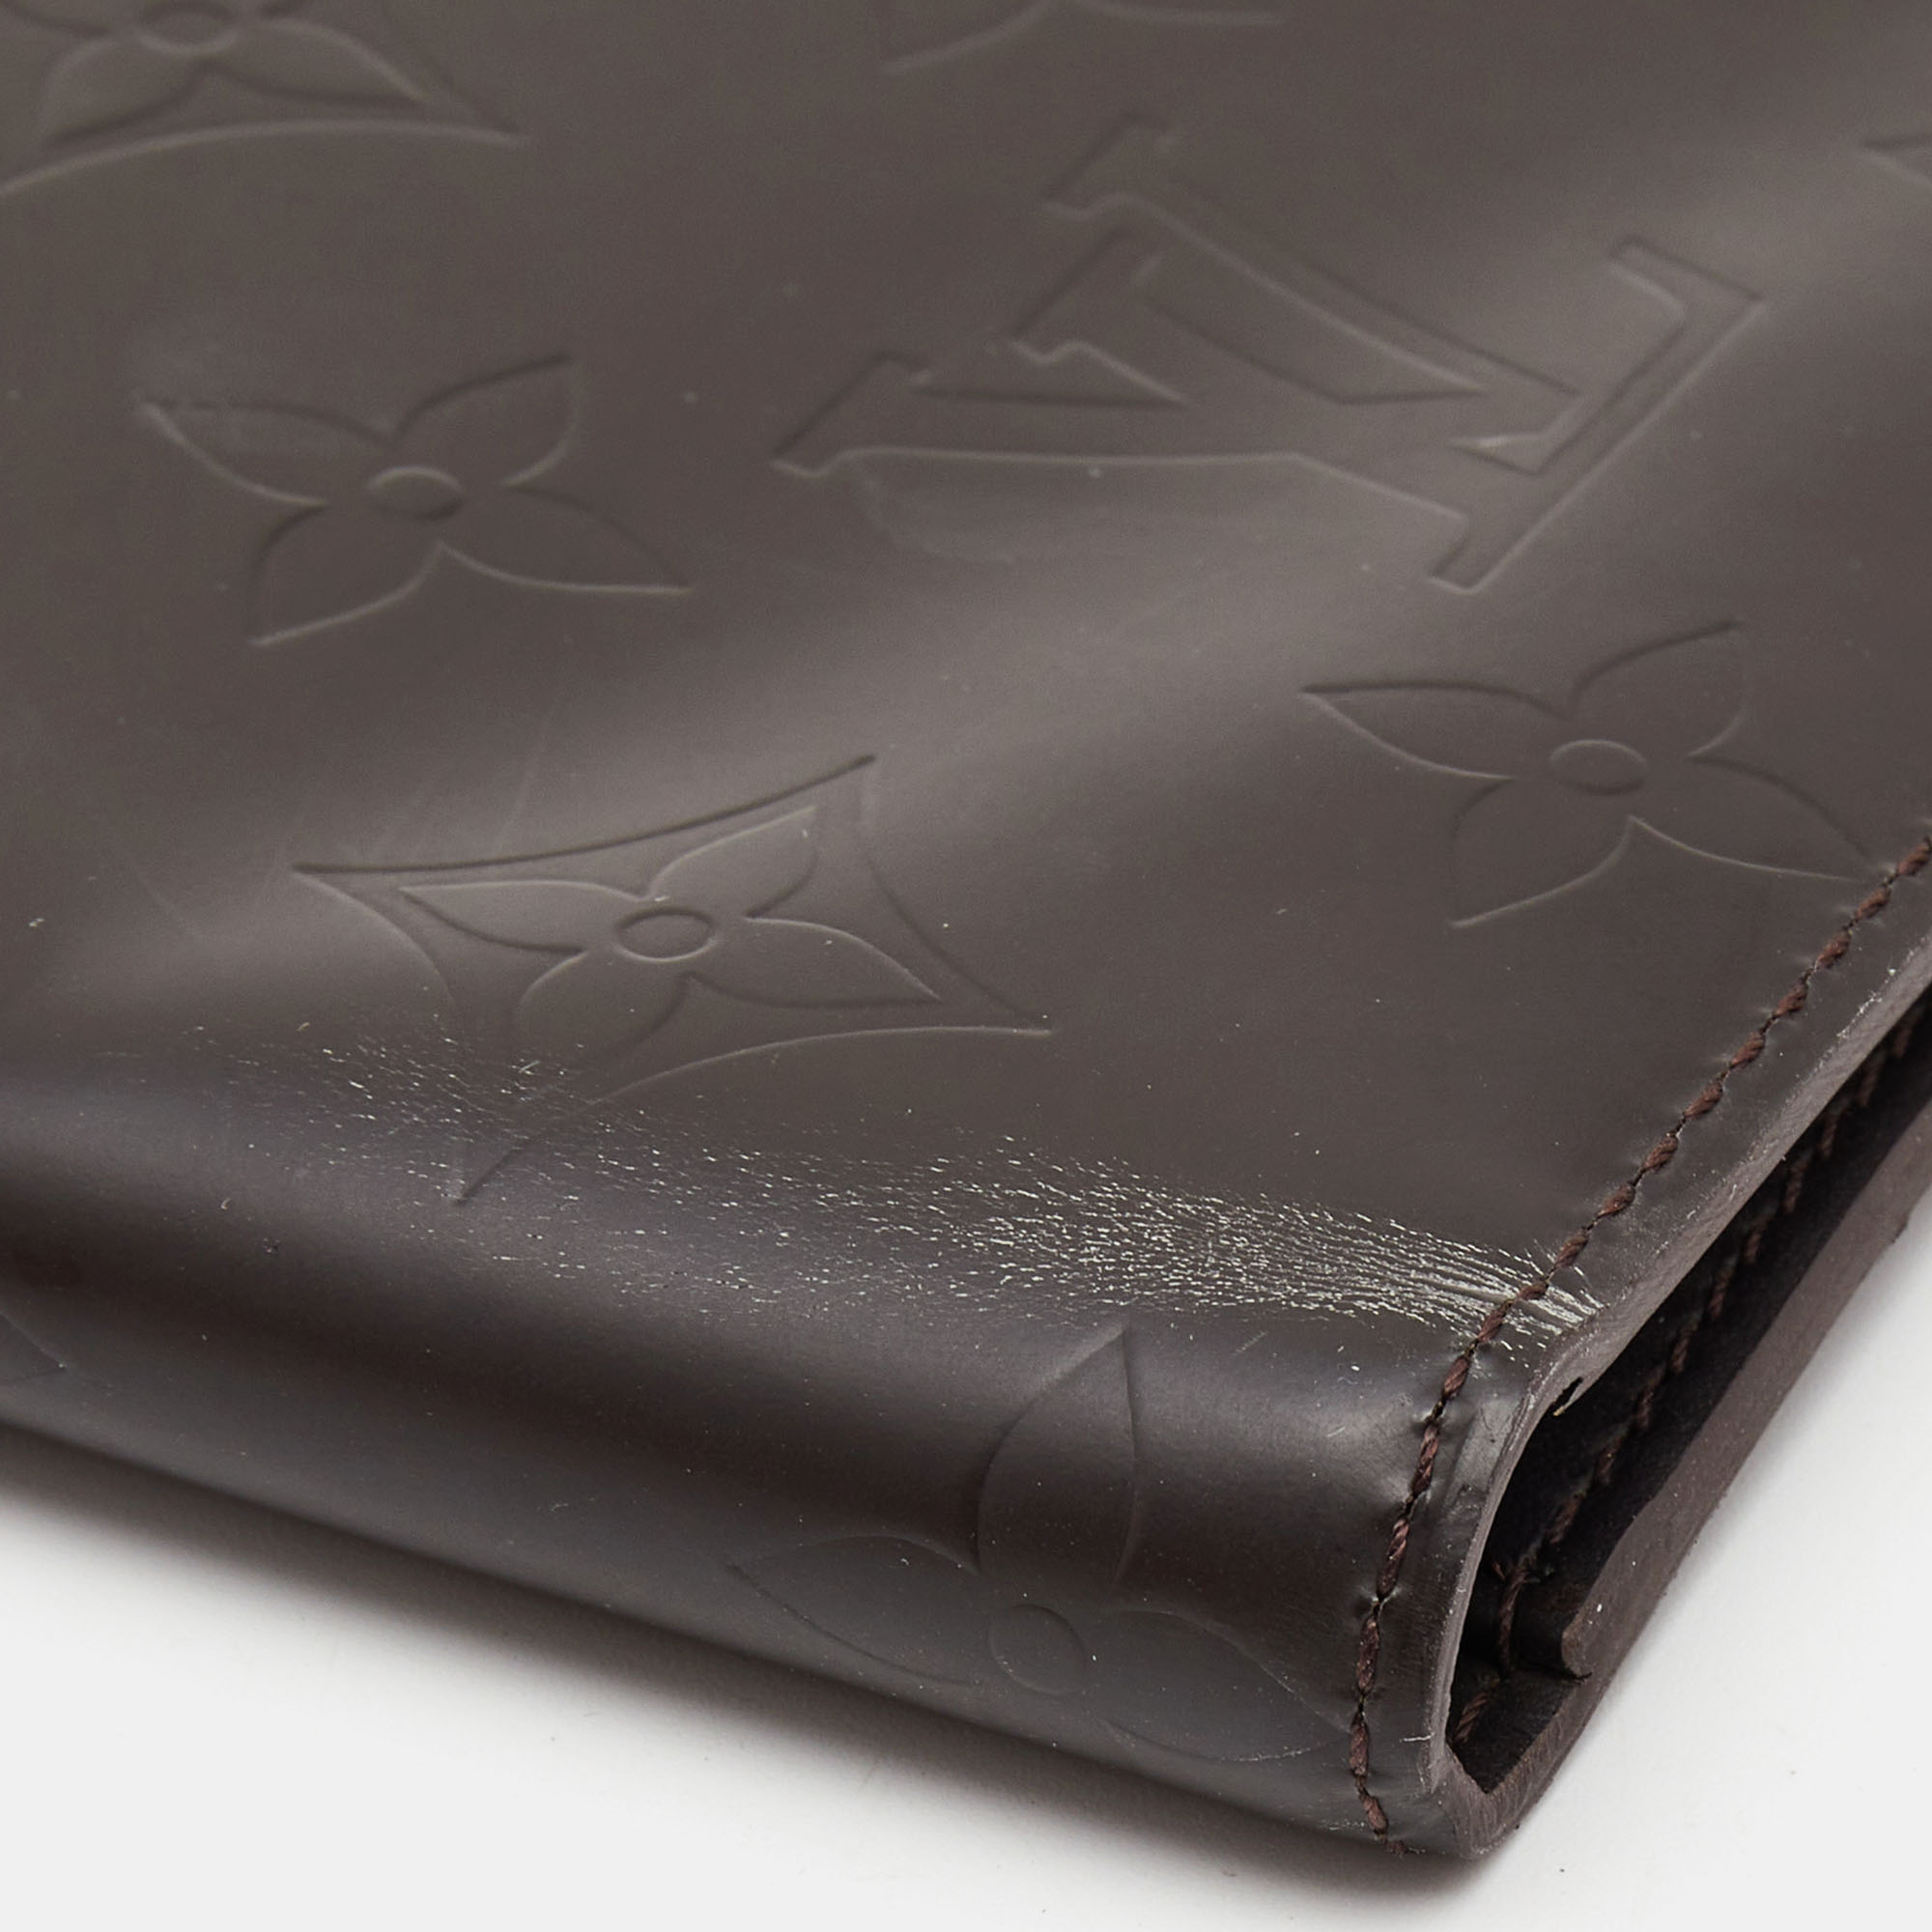 Louis Vuitton Dark Brown Monogram Matte Leather Bifold Wallet Organizer